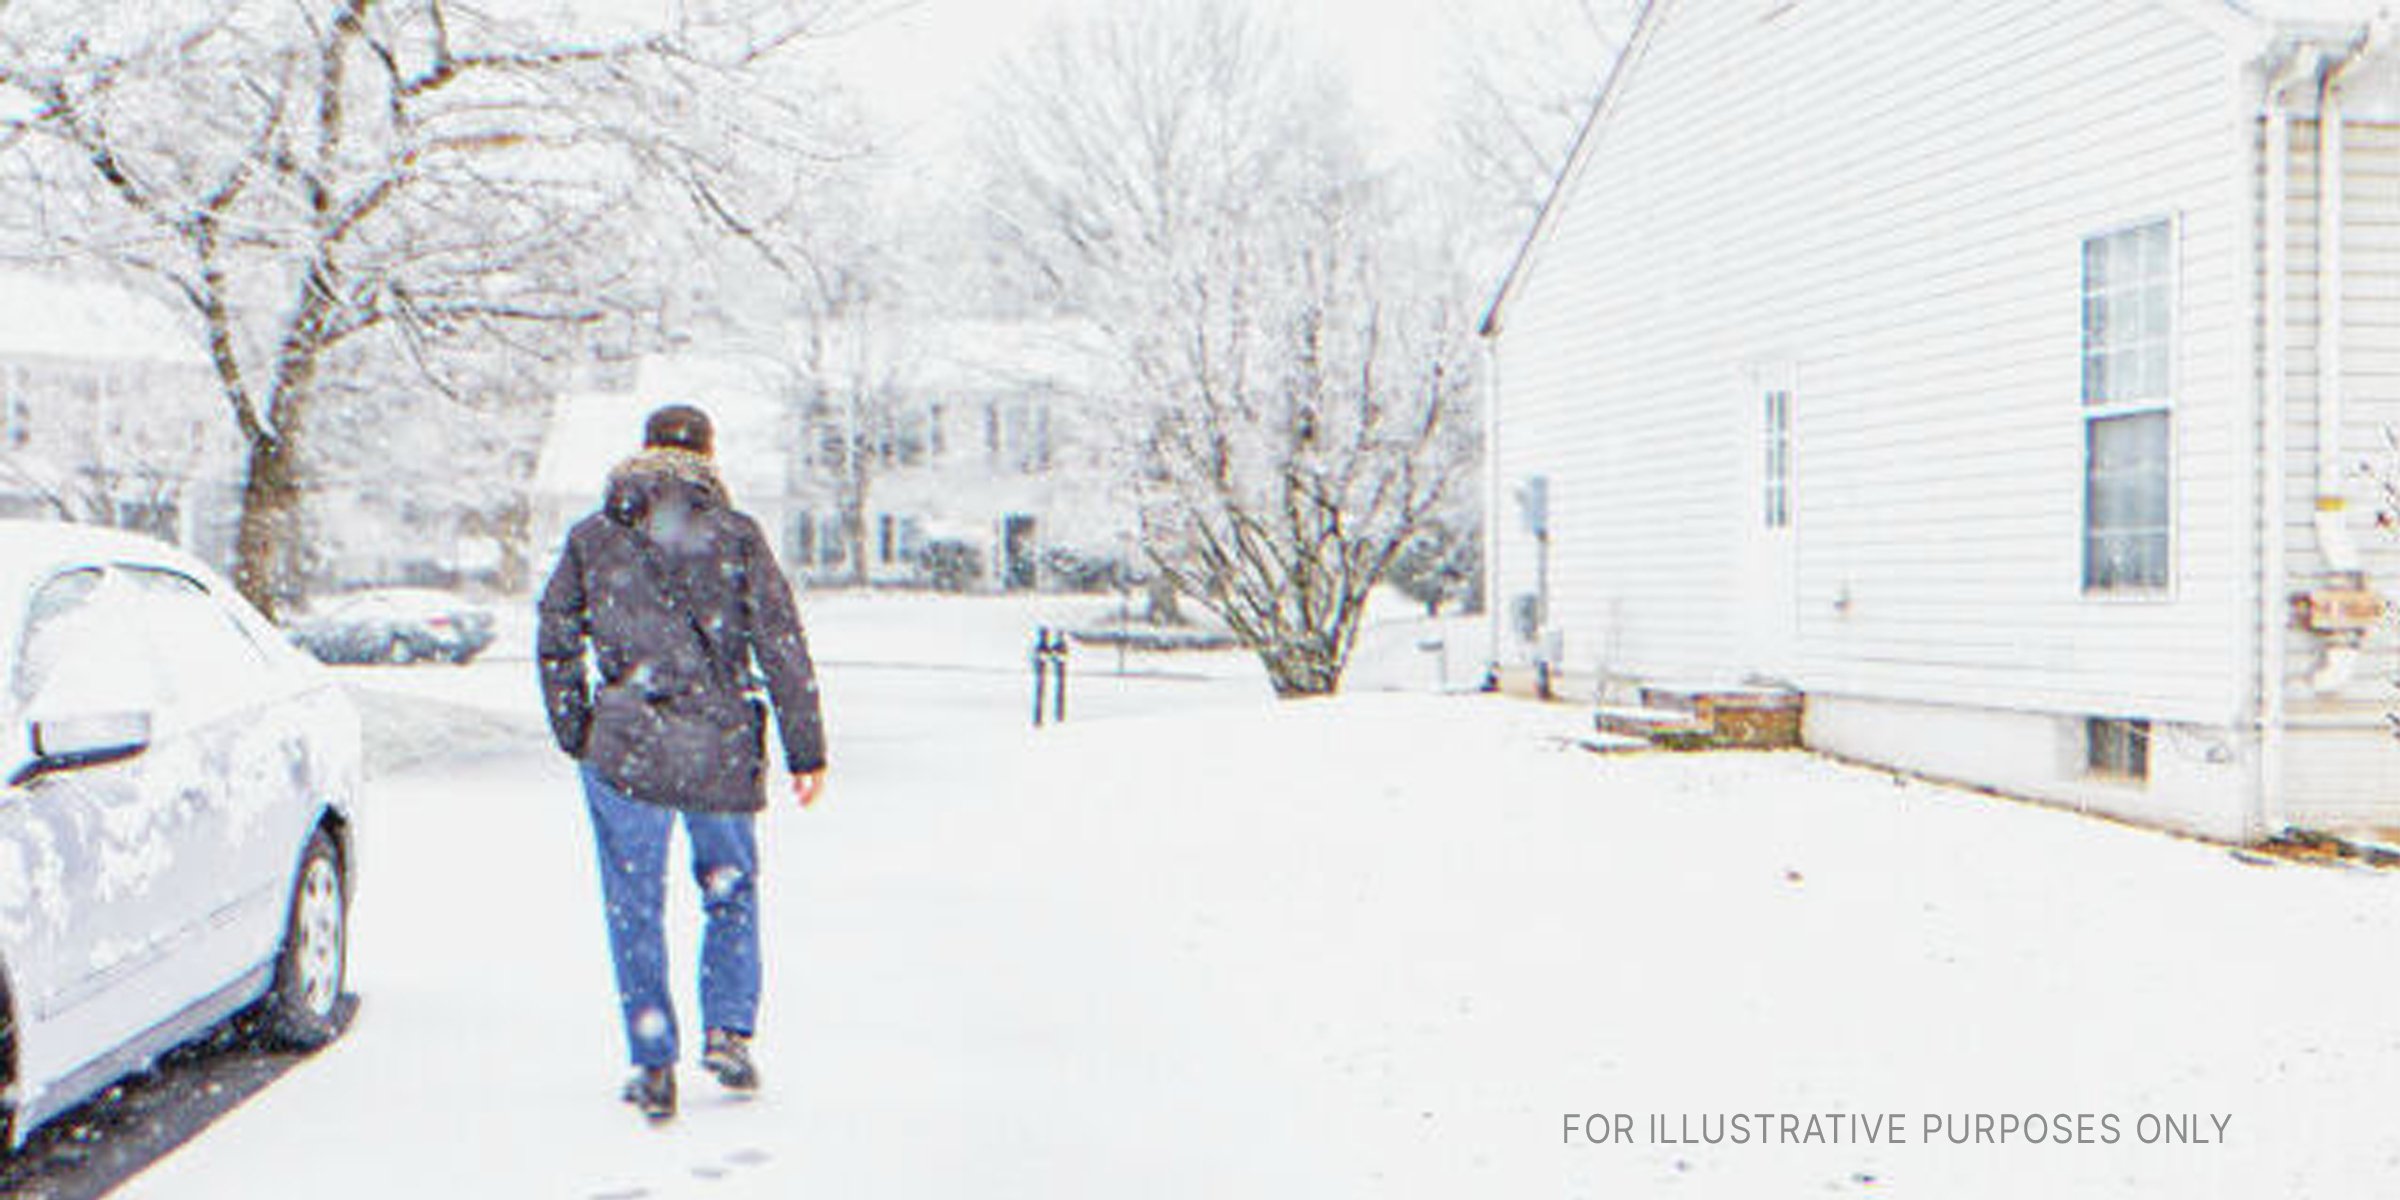 Ein Mann geht im Schnee spazieren. | Quelle: Shutterstock